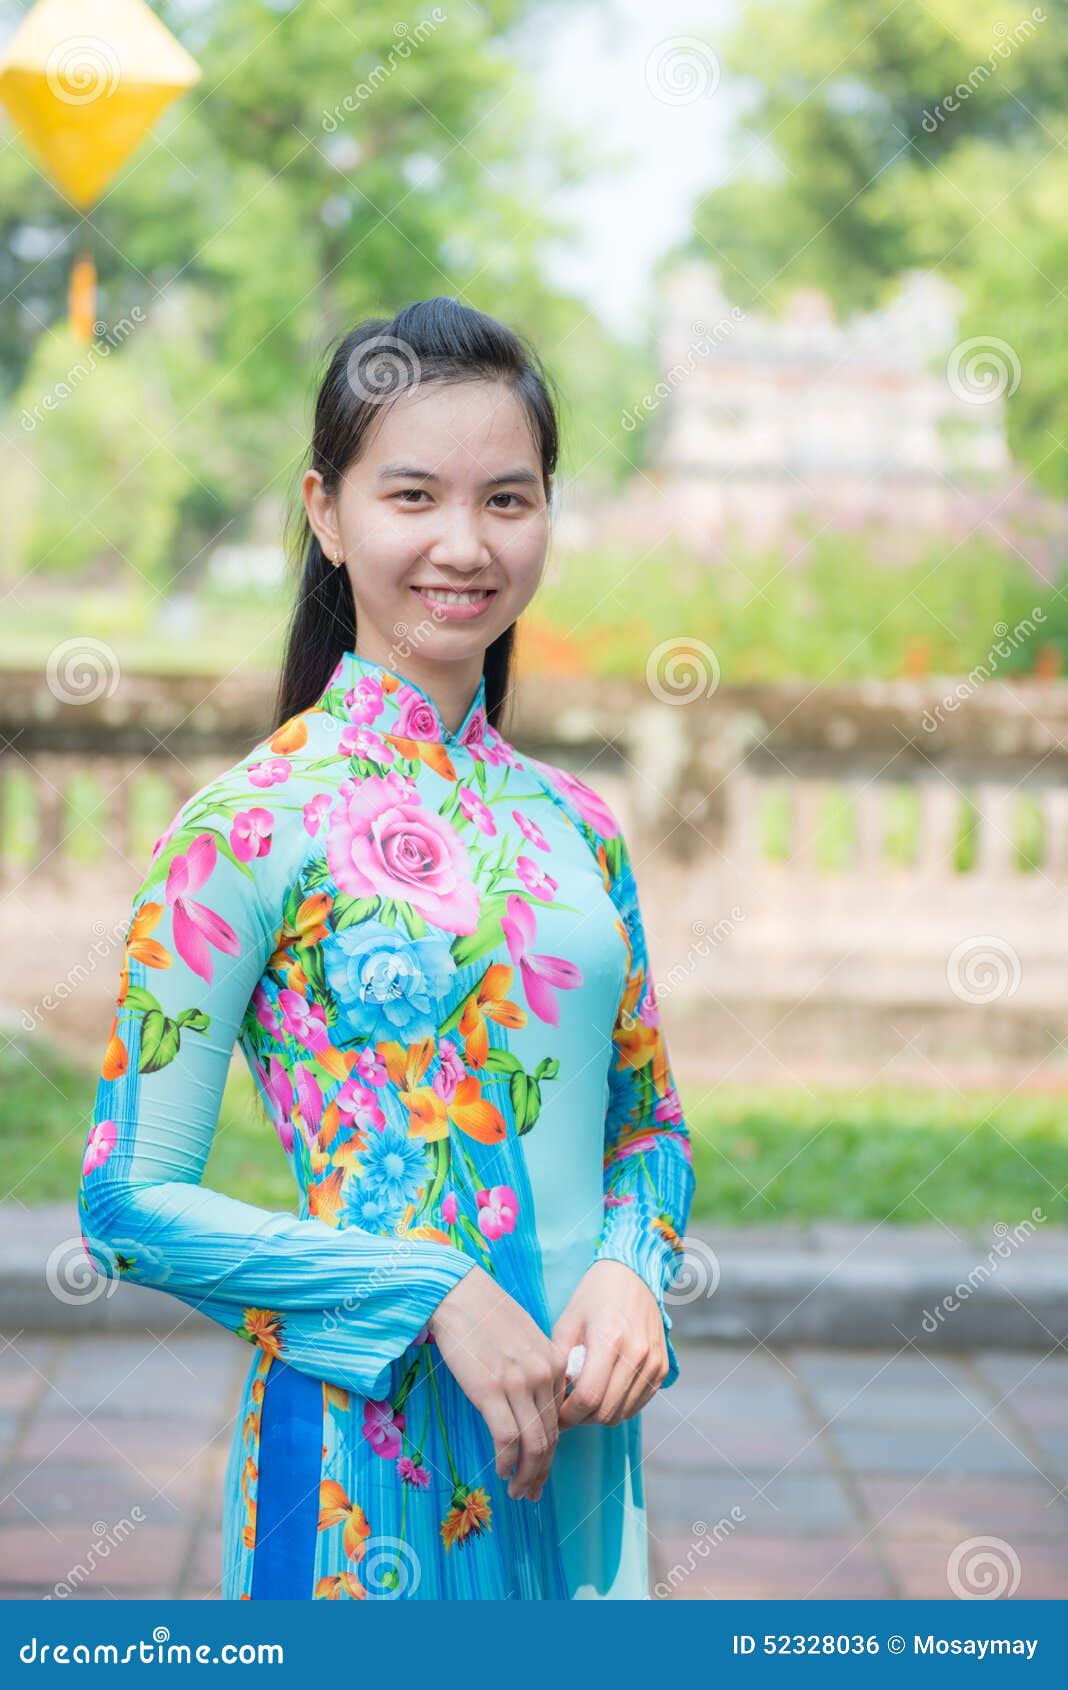 棕色双马尾卷发，齐刘海儿，穿着粉色旗袍的越南少女 站姿 全身照 4/3侧面照 竖幅 右手轻抚额头 腊梅 黄梅 树